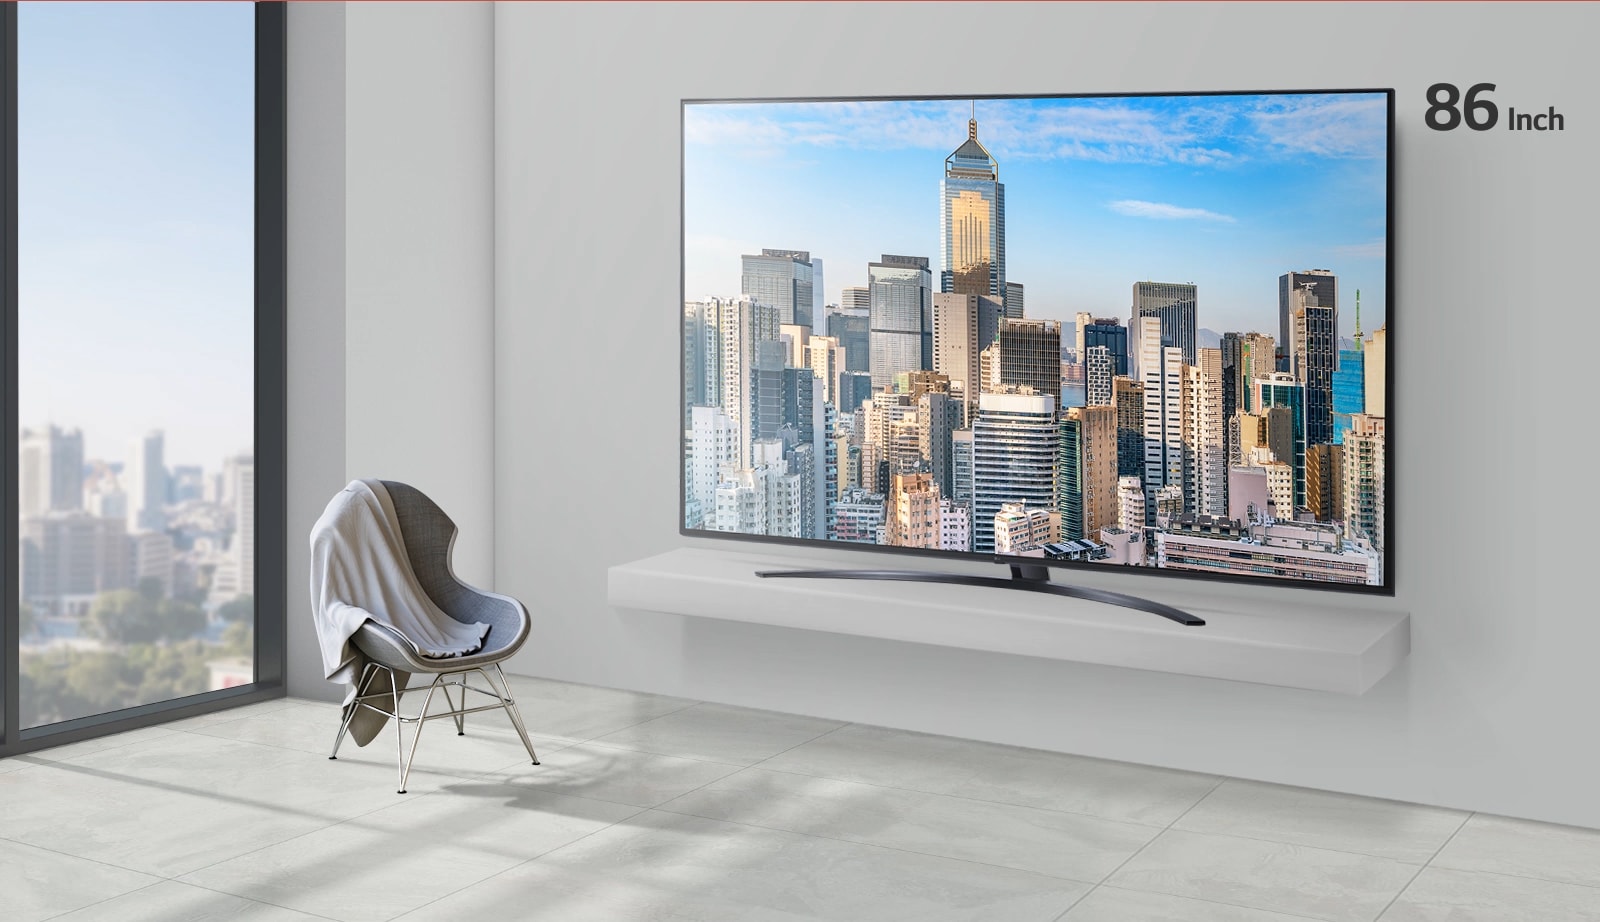 Размер телевизора в офисе, воспроизводящего изображение небоскреба, увеличивается с 55 до 86 дюймов.